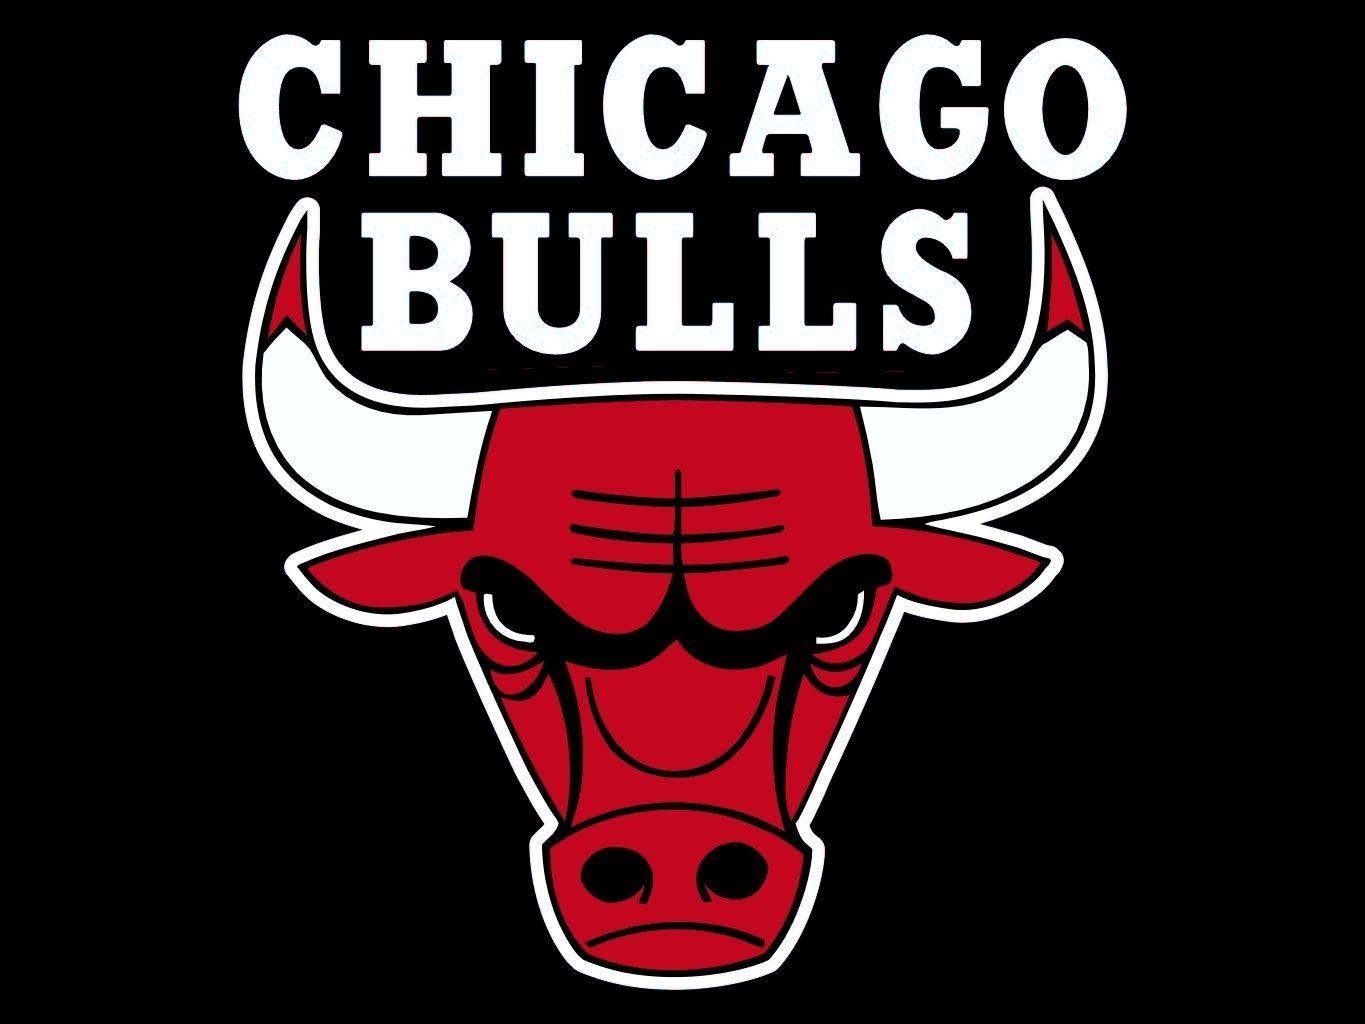 Chicago Bulls Wallpaper, Best Chicago Bulls